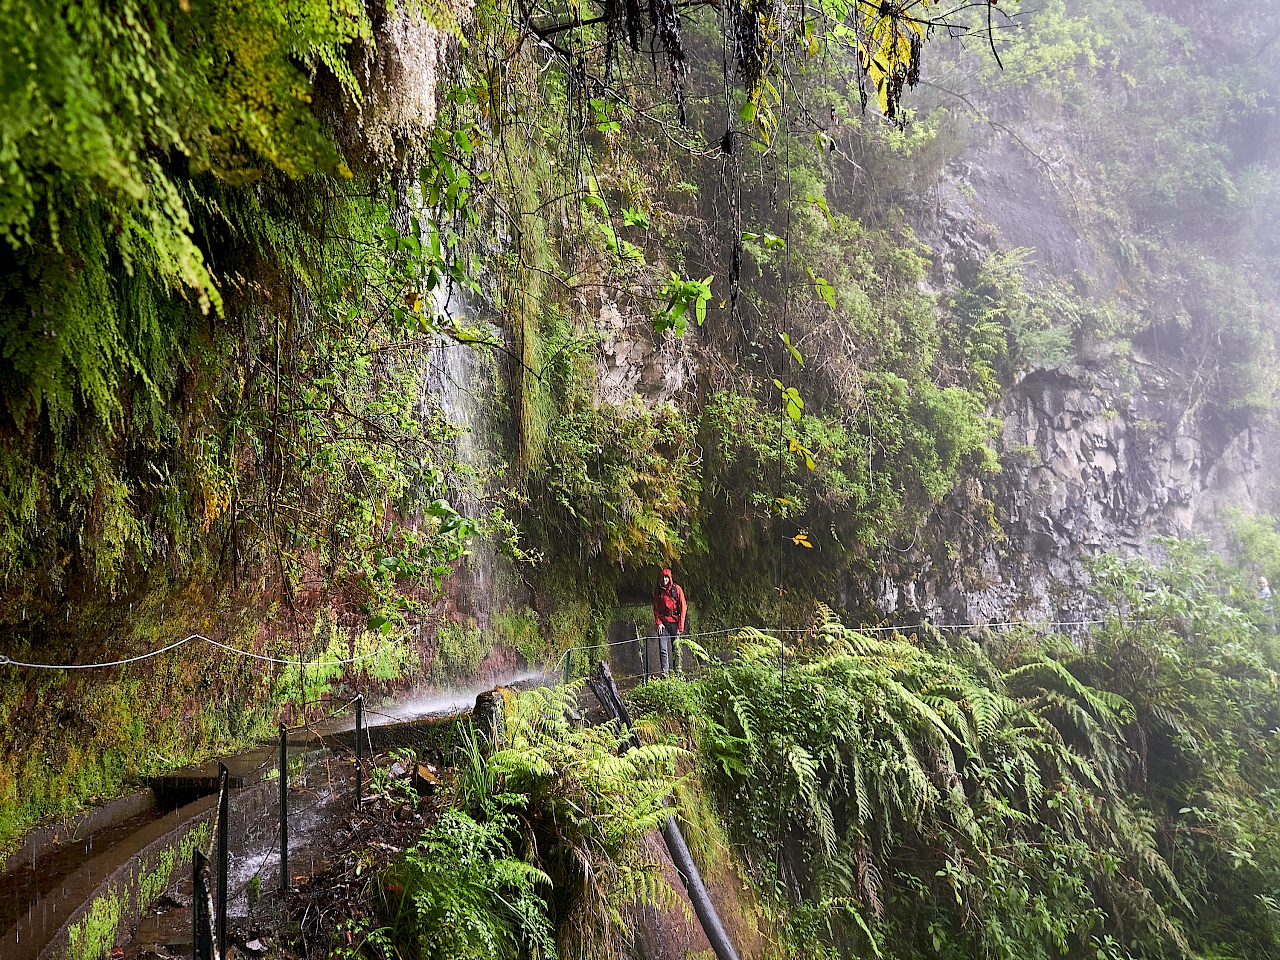 Wanderung hinter einem Wasserfall entlang - Levada do Rei (Madeira)